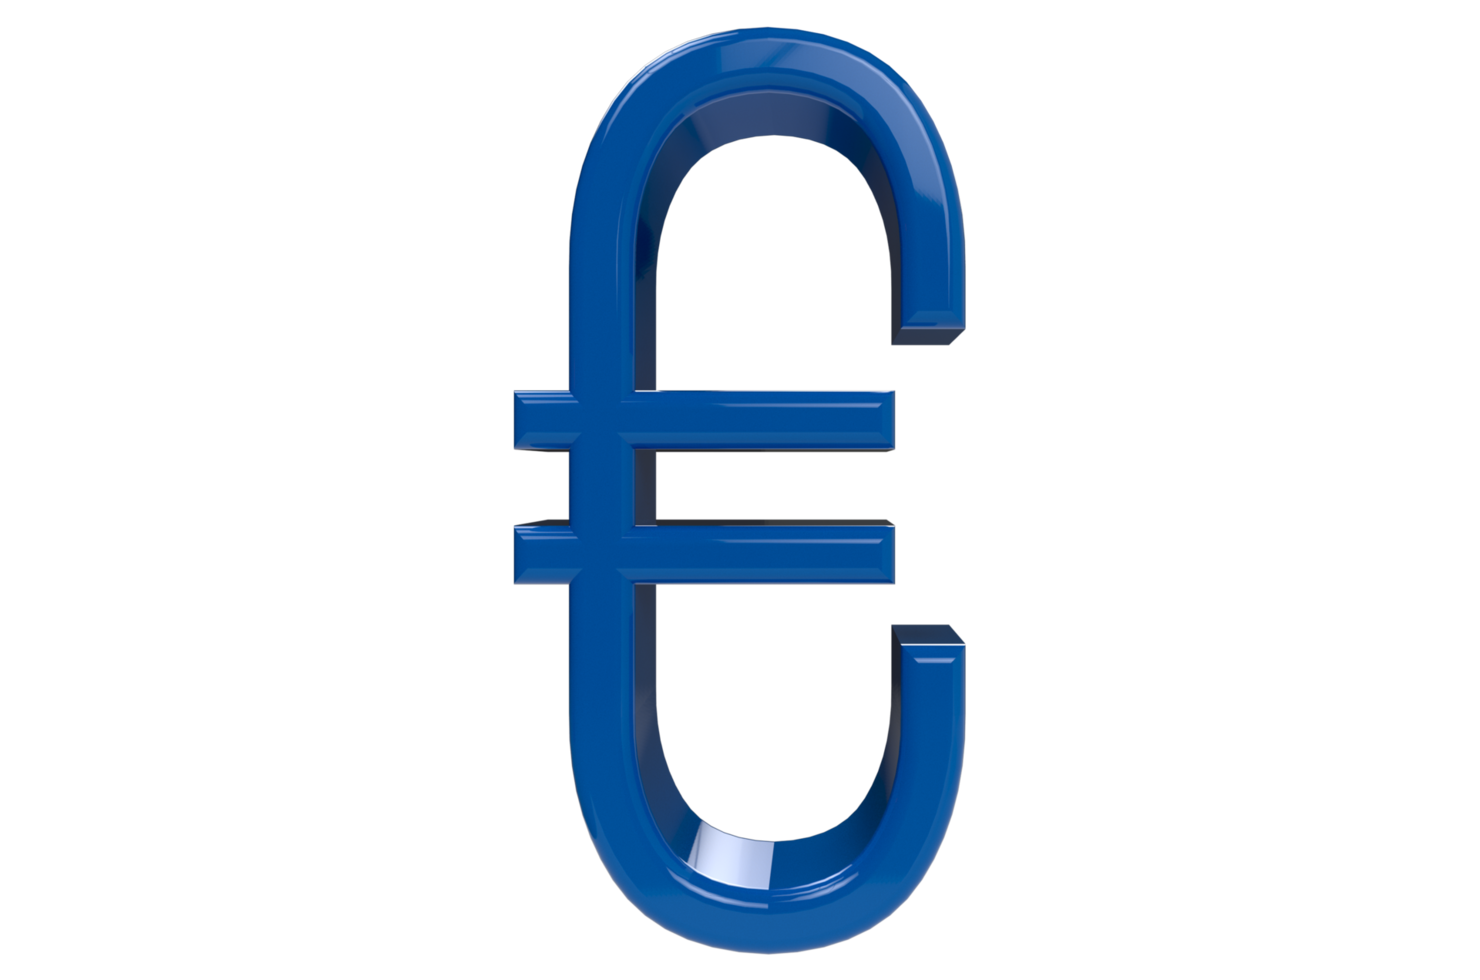 3D-Render-Euro-blaues Zeichen png mit transparentem Hintergrund